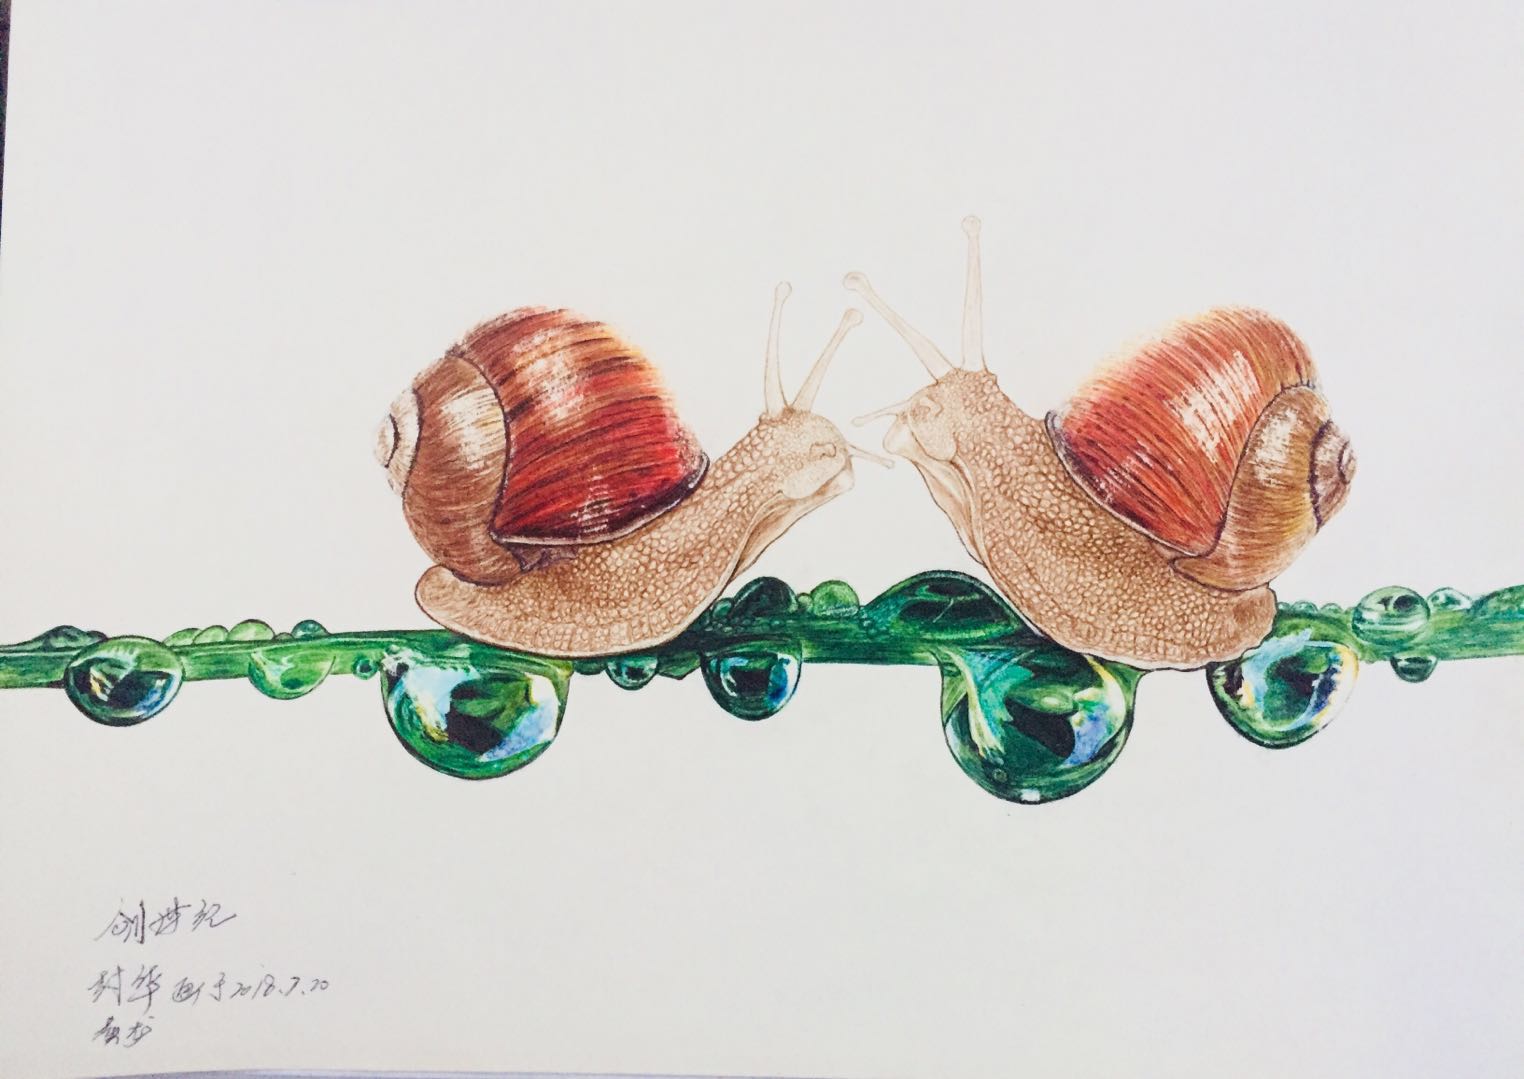 马蒂斯的作品蜗牛图片